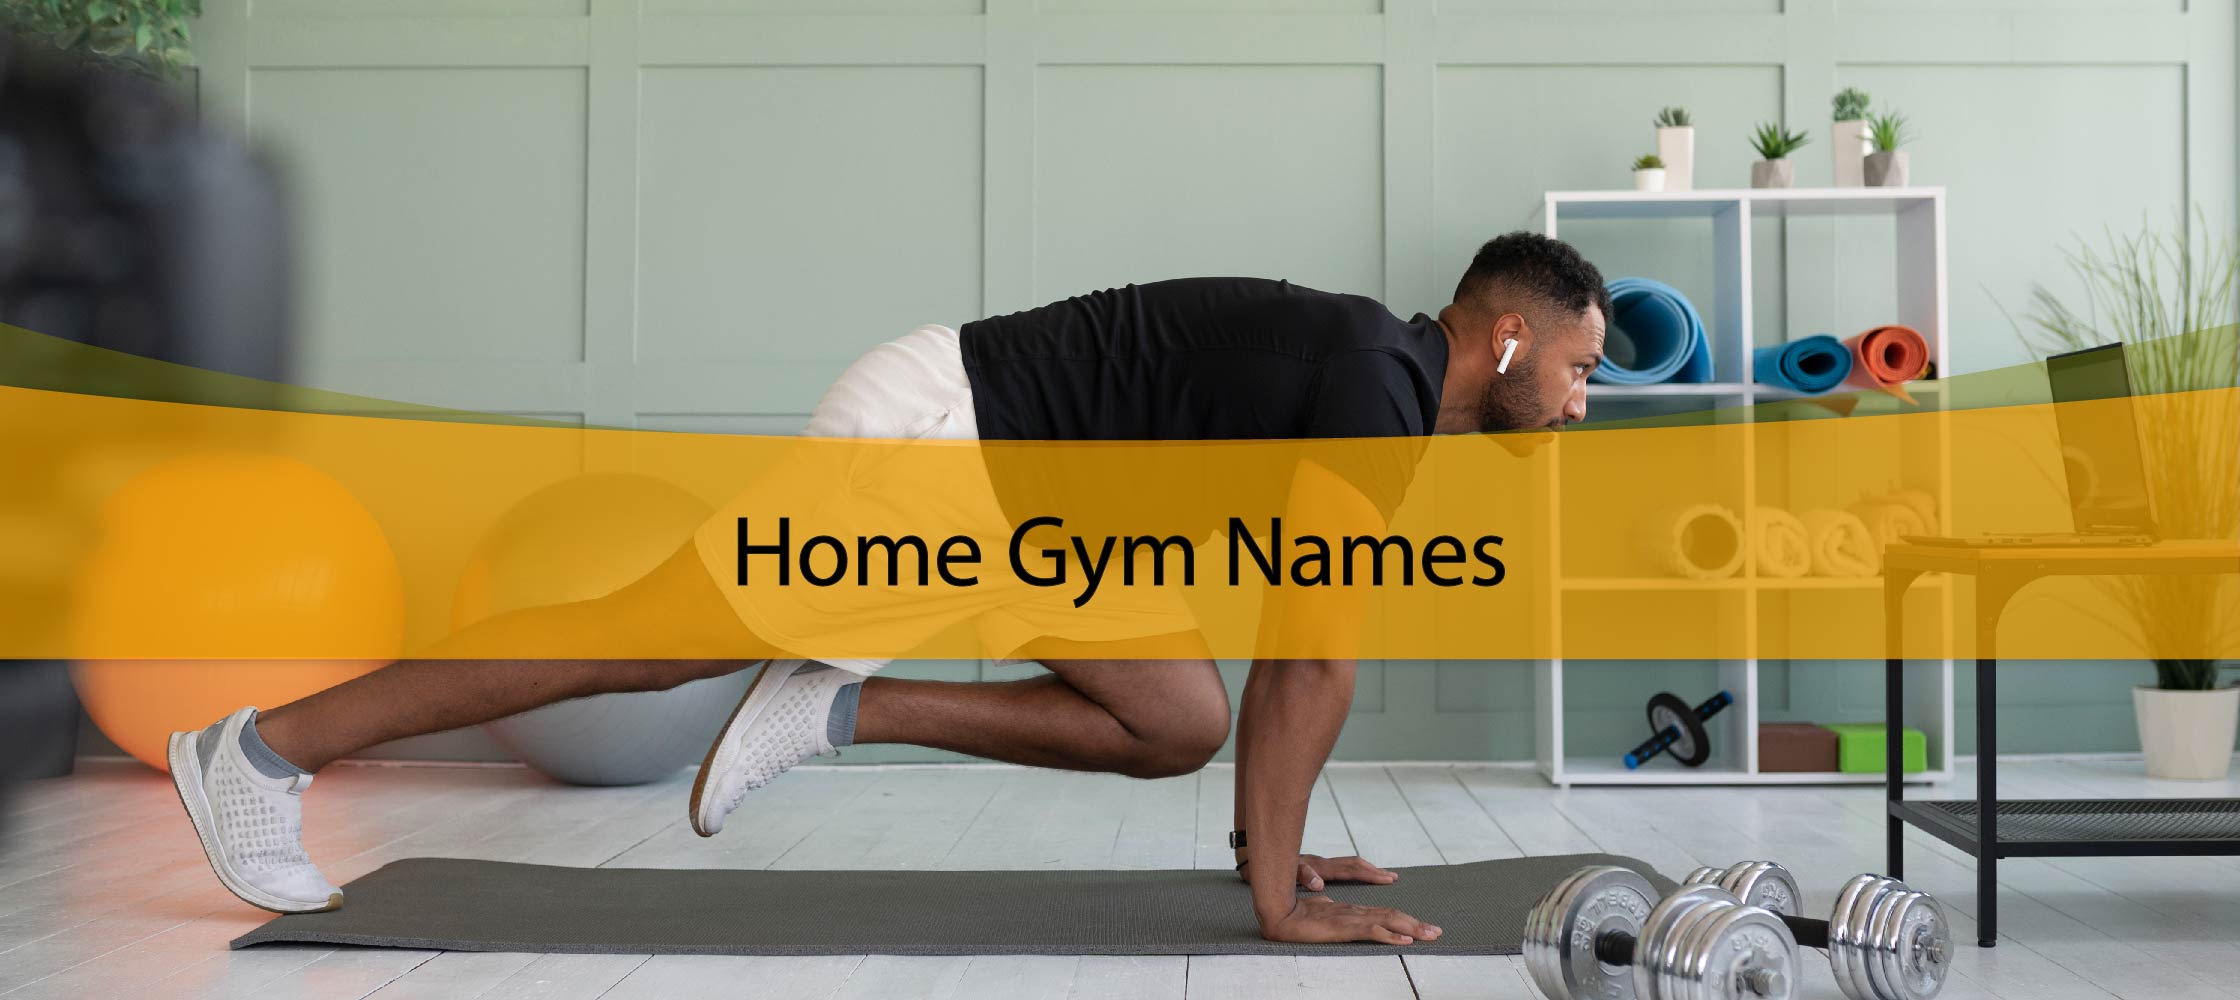 Home Gym Names